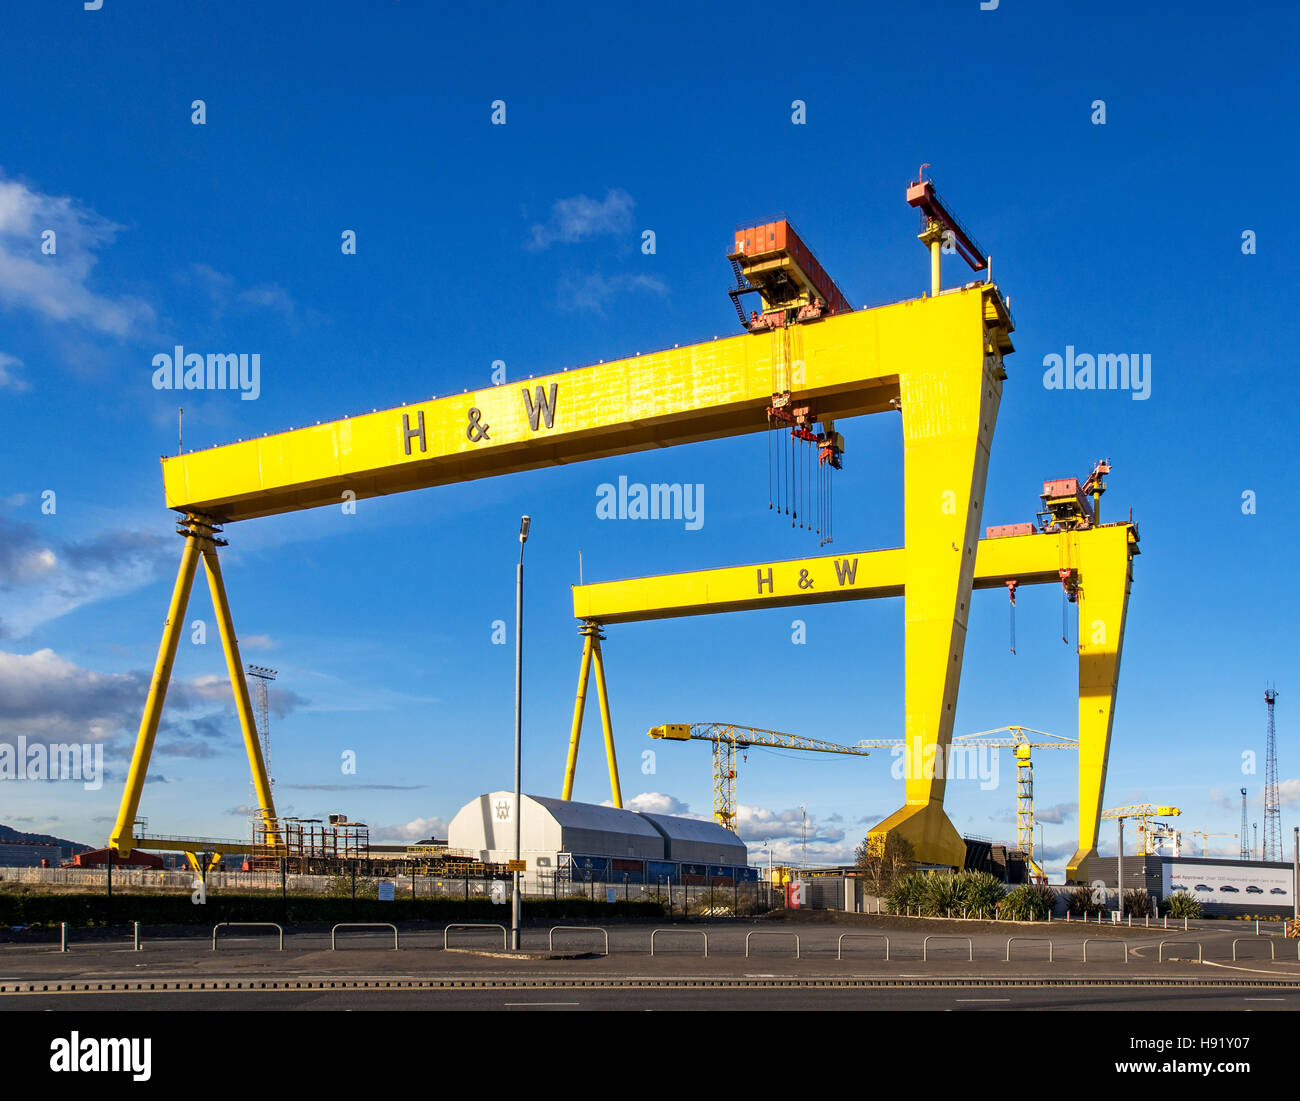 Sansone e Golia. Twin costruzione navale Gantry cranes in Titanic Quarter, famoso punto di riferimento di Belfast, Norther Irlanda. Foto Stock